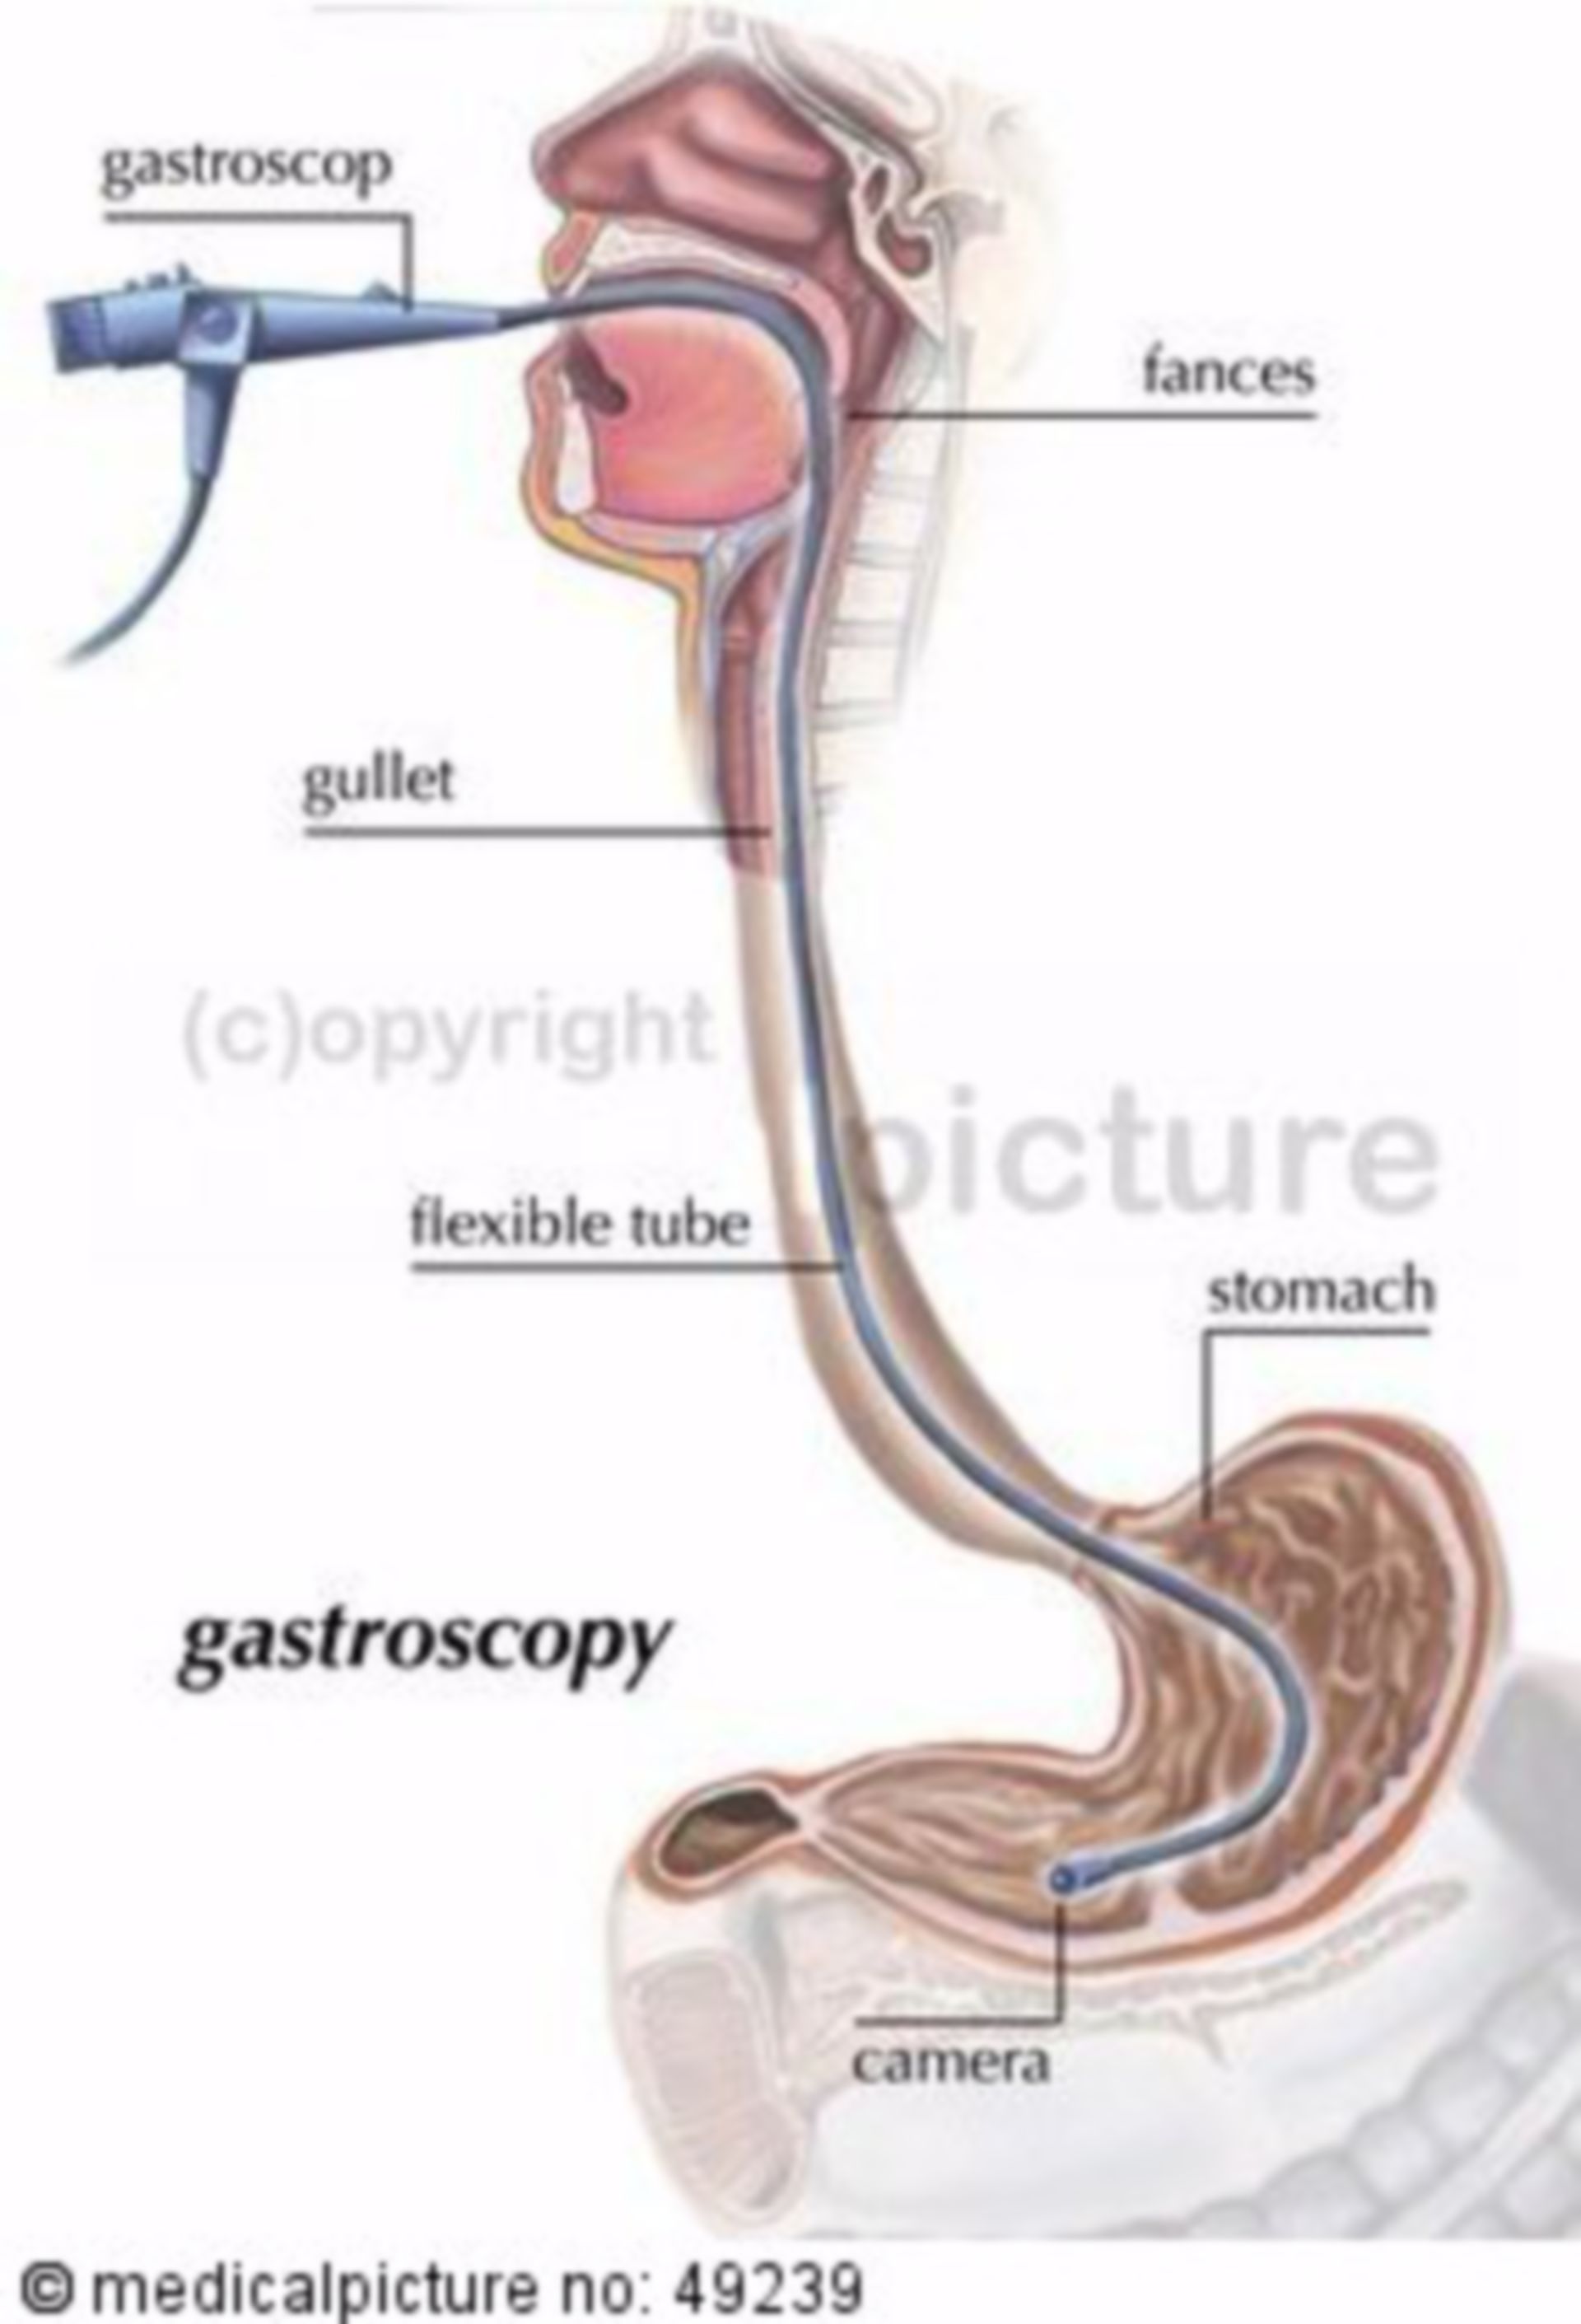  Magenspiegelung (Gastroskopie) 
